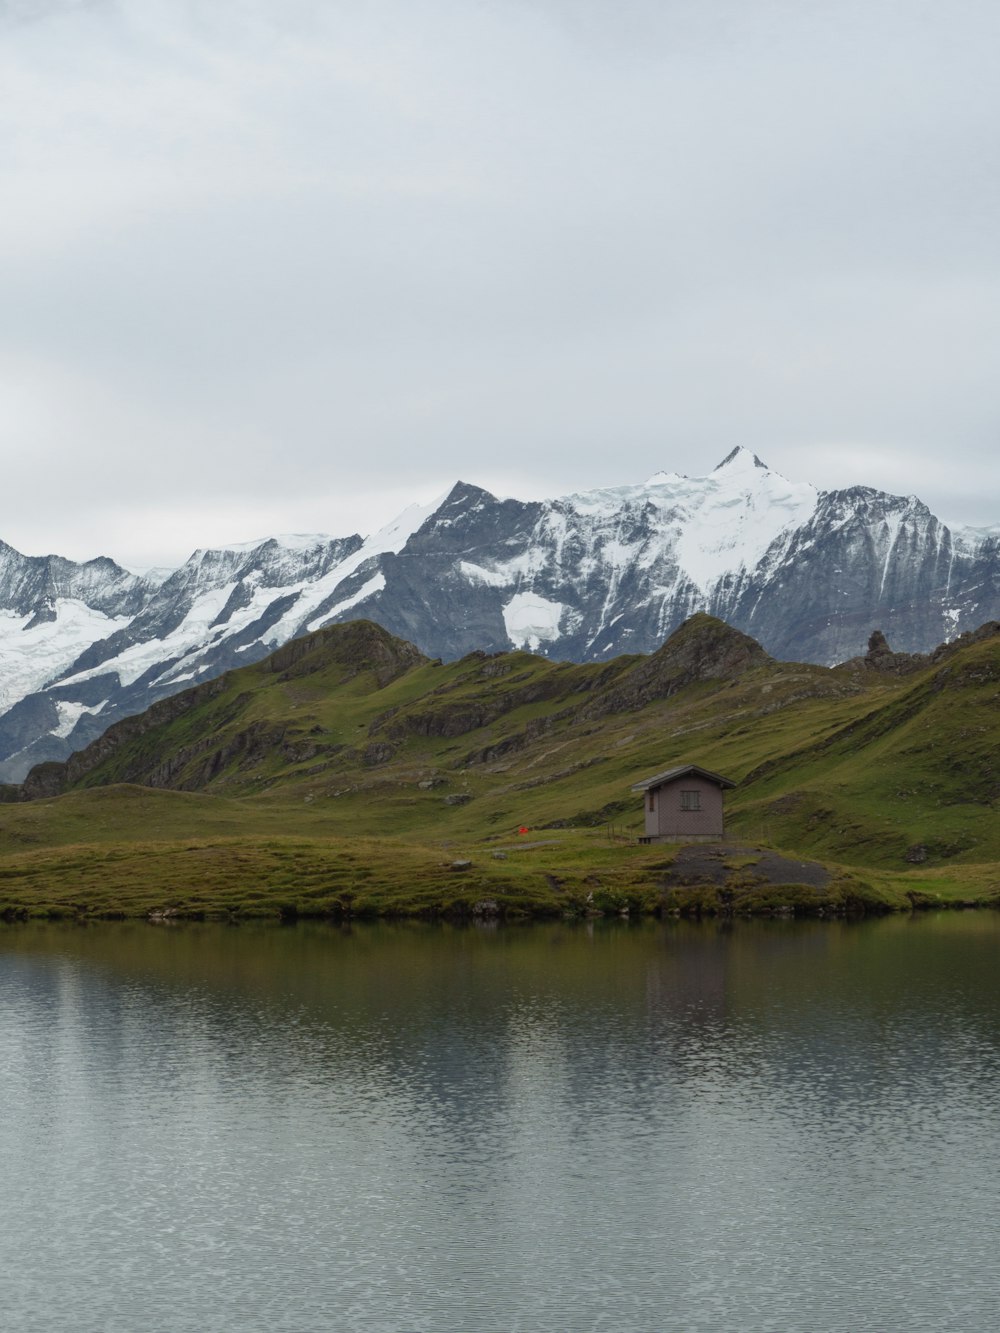 Maison en bois marron sur le lac près d’une montagne enneigée